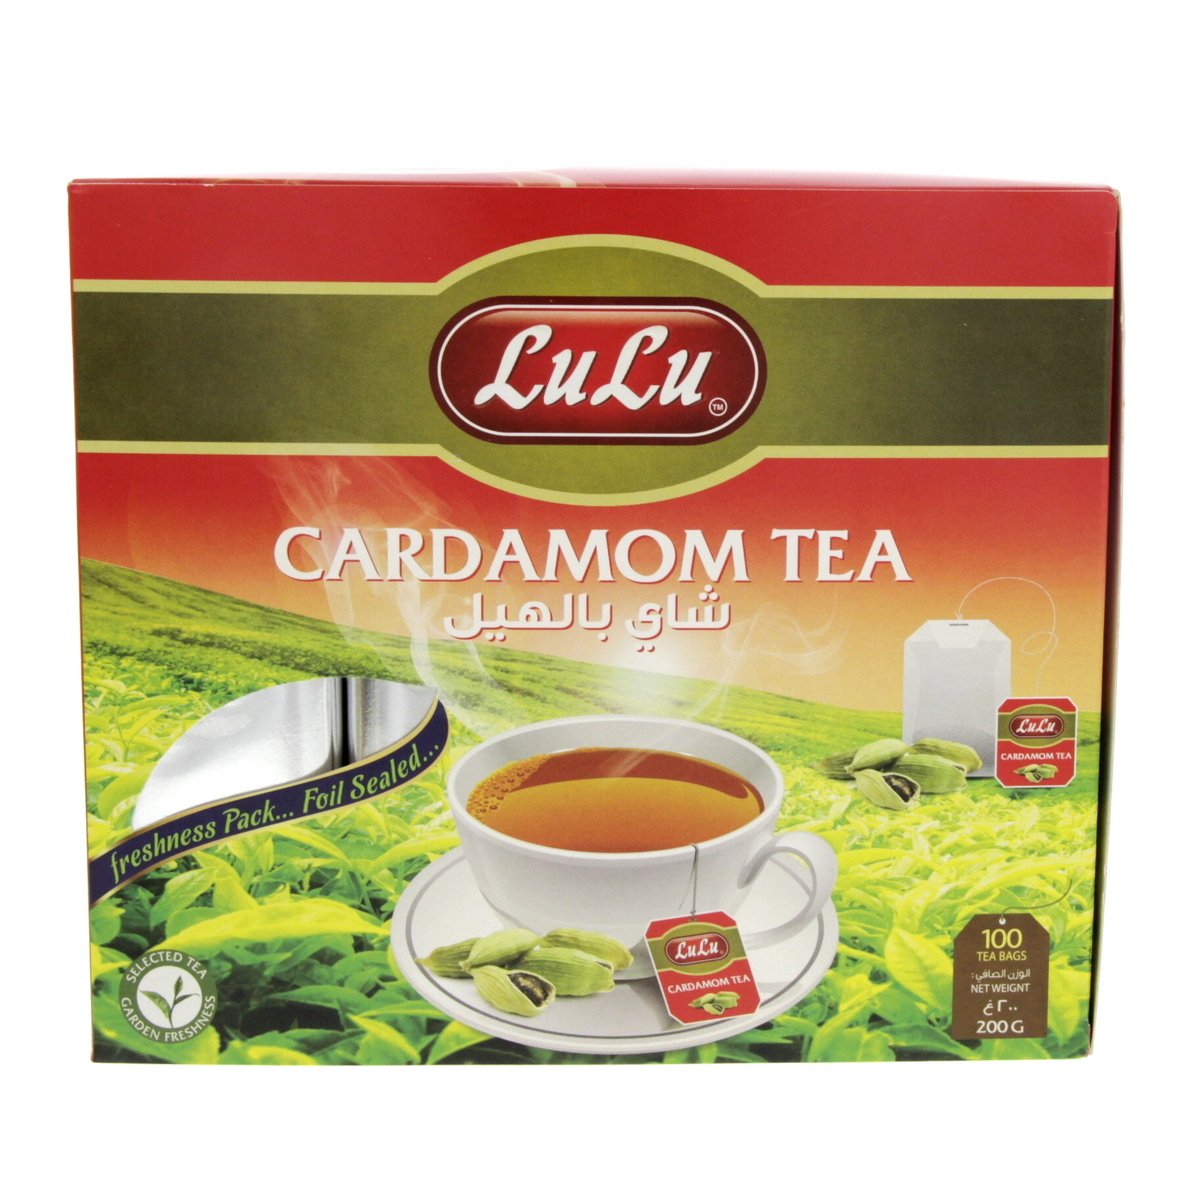 LuLu Cardamom Tea 100 pcs